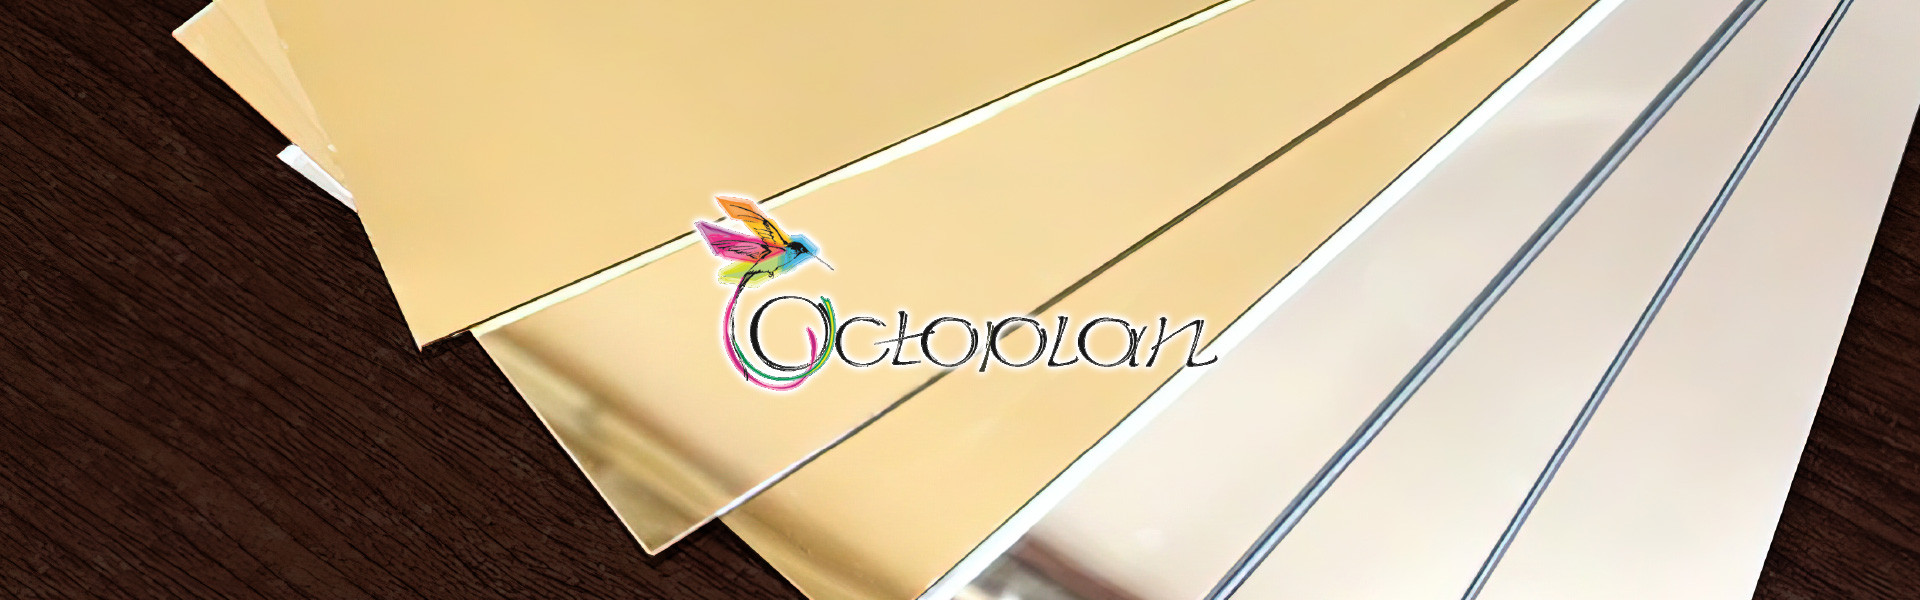 Золотистый зеркальный полистирол OCTOPLAN 1 мм – 15 € за м.кв